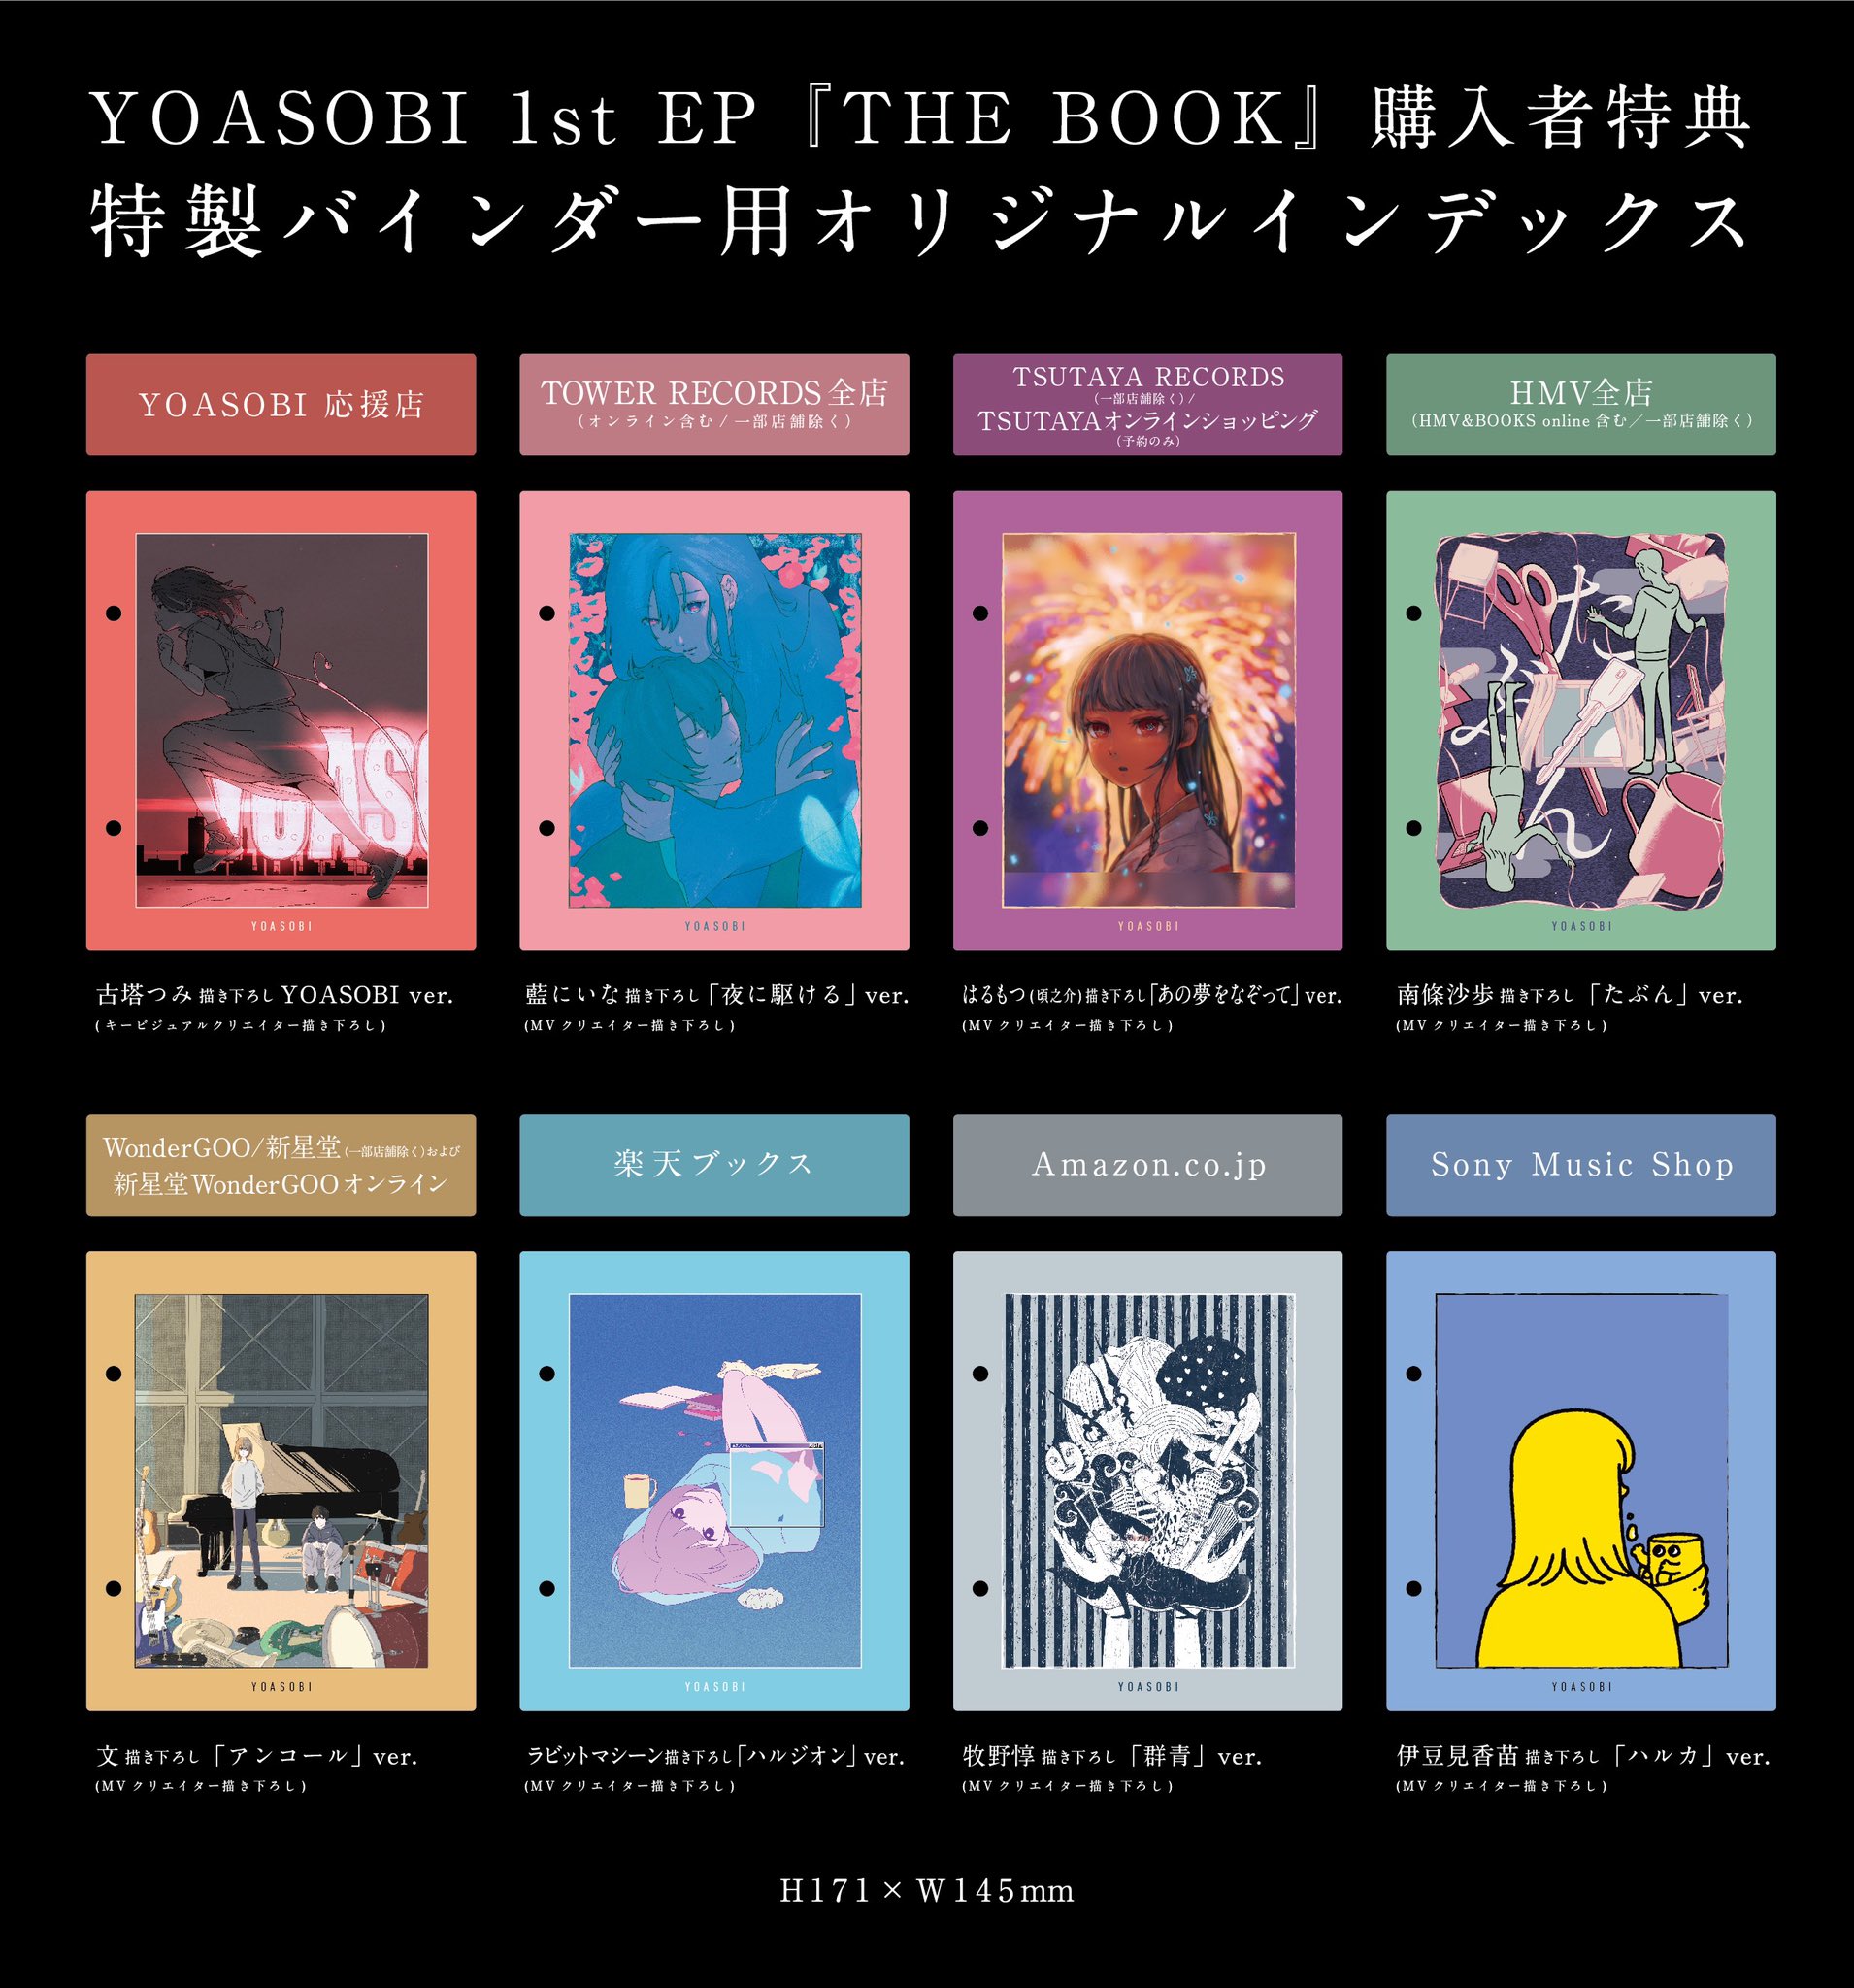 THE BOOK (完全生産限定盤) YOASOBI 応援店特典付